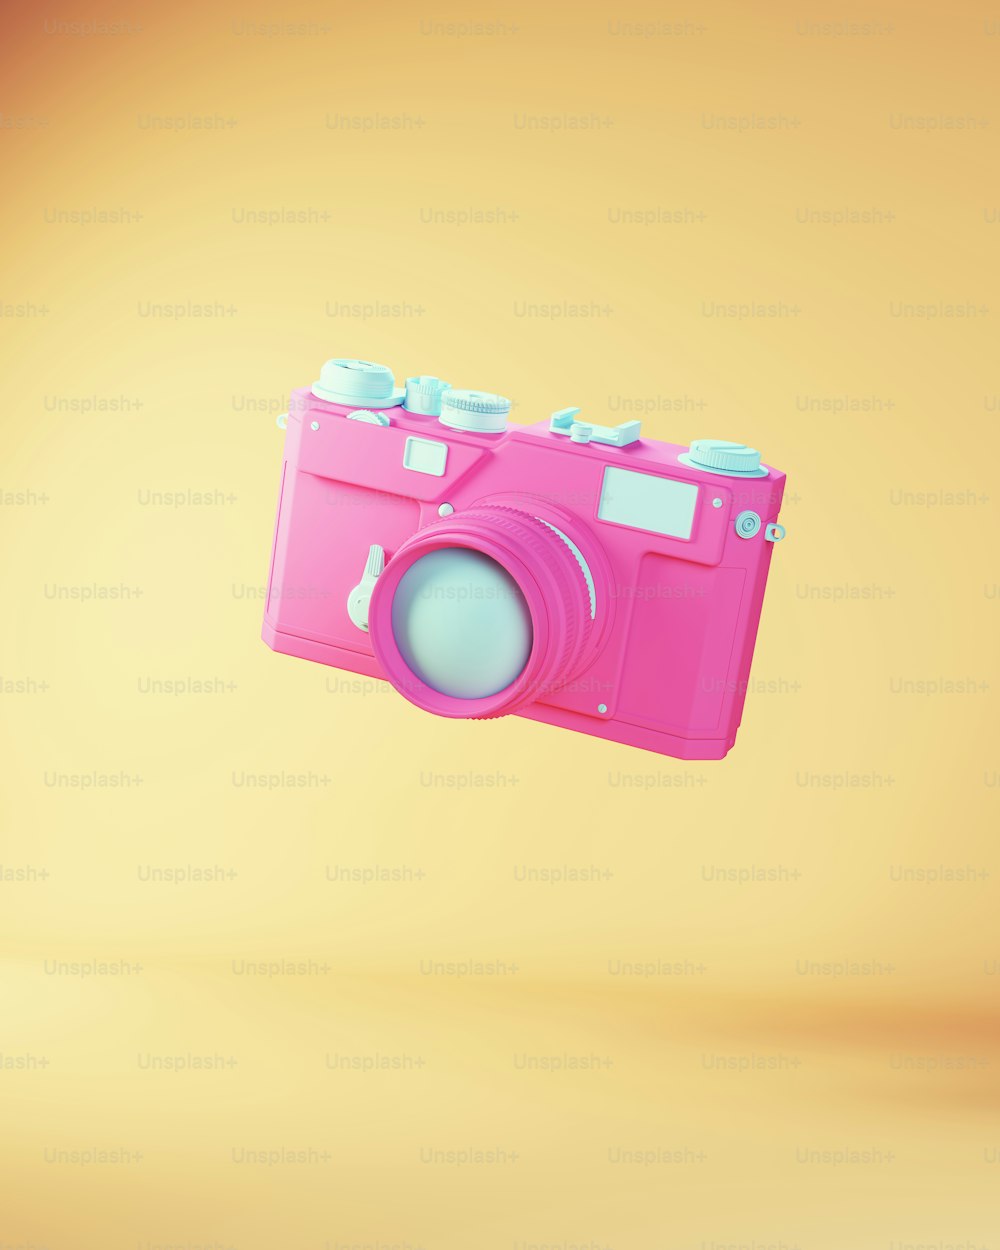 블루 핑크 빈티지 카메라 렌즈 전통 사진 장비 스냅 샷 사진 3d 그림 렌더링